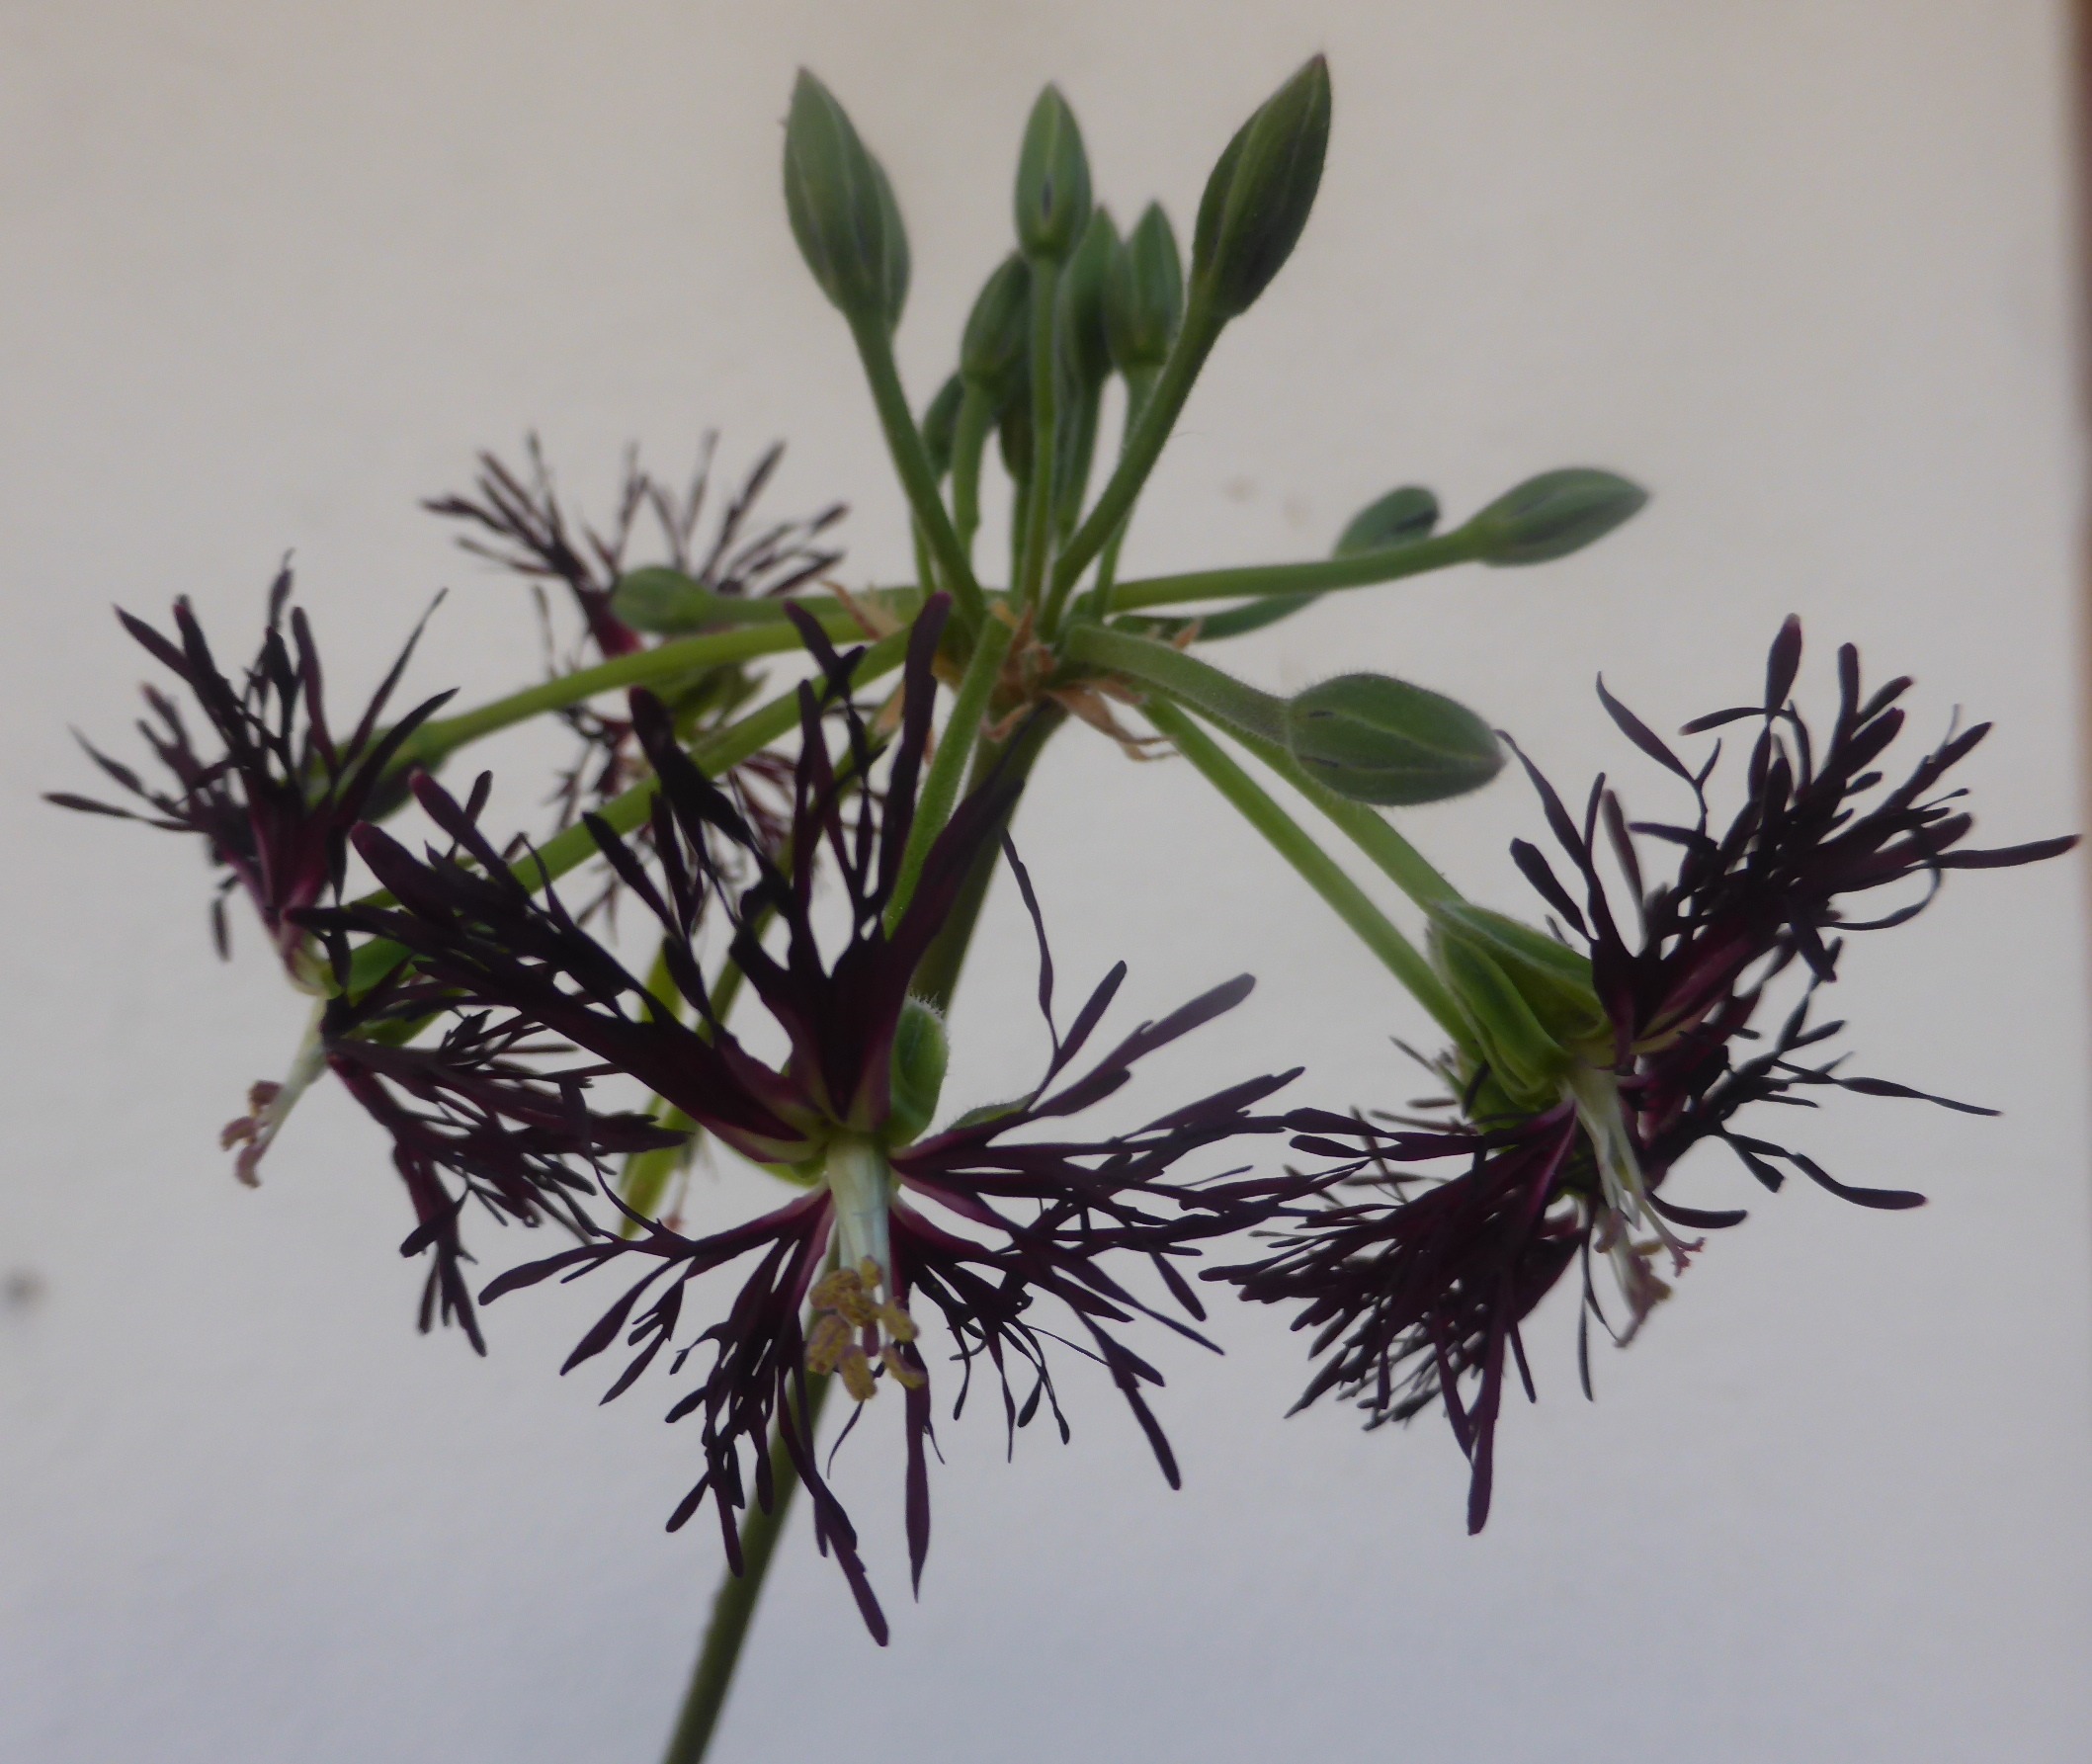 Pelargonium caffrum ‚Treml‘